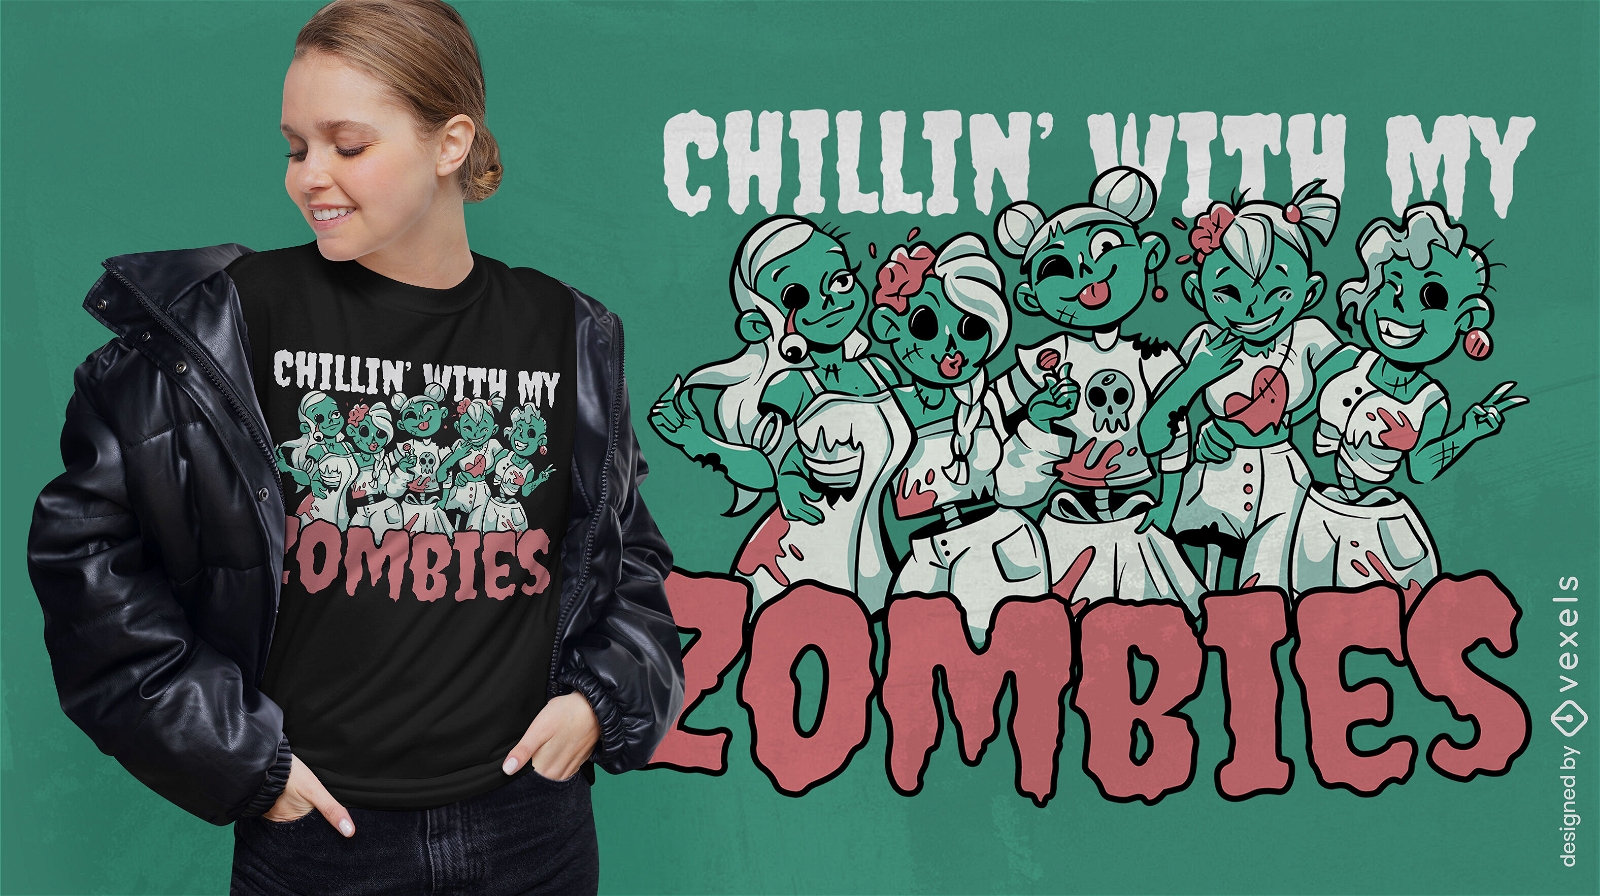 Zombie girl fiends t-shirt design